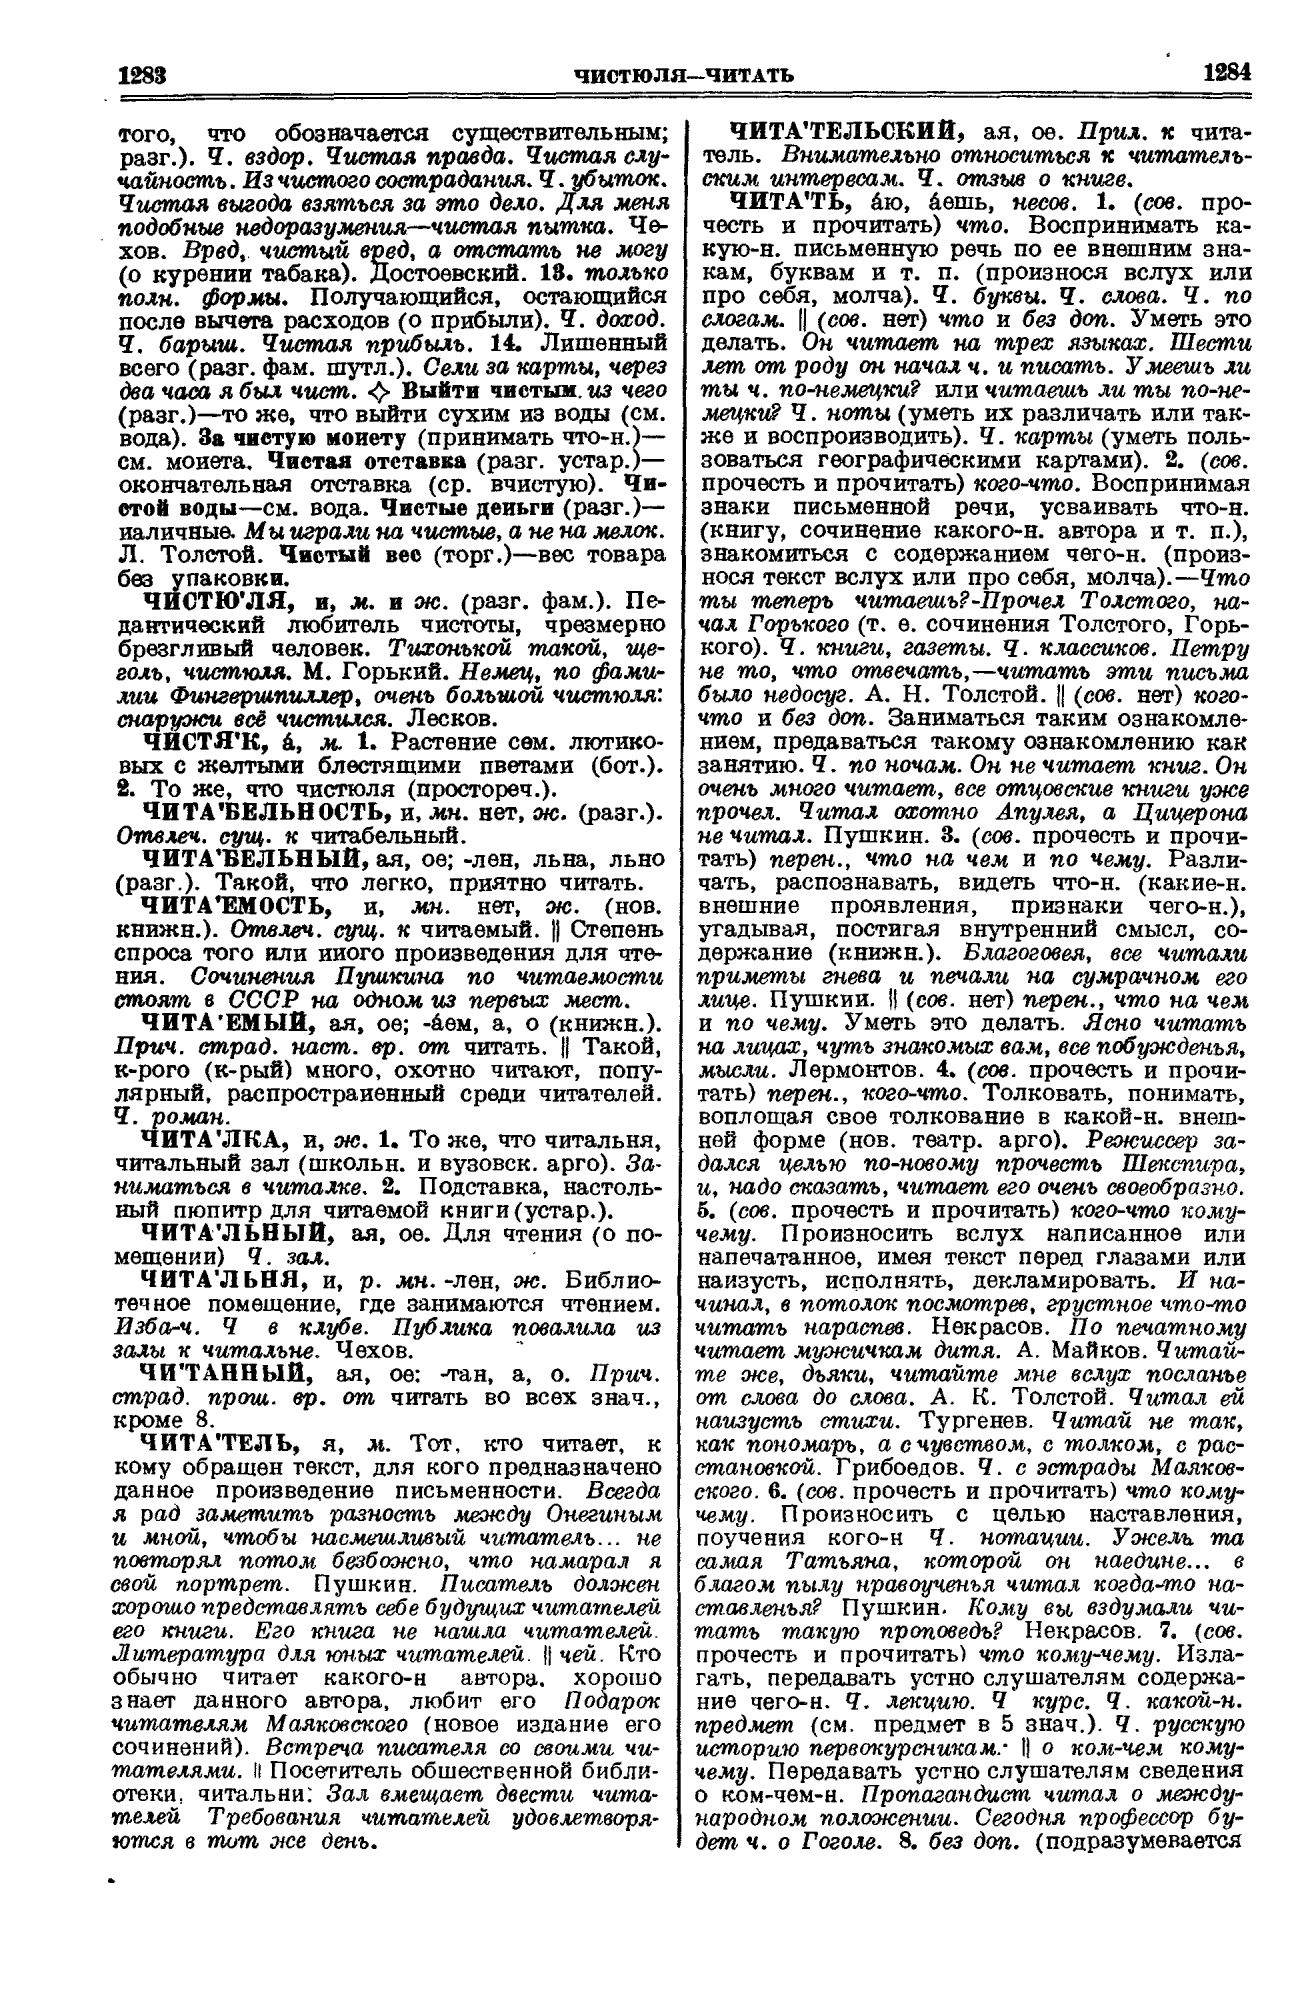 Фотокопия pdf / скан страницы 642 толкового словаря Ушакова (том 1)